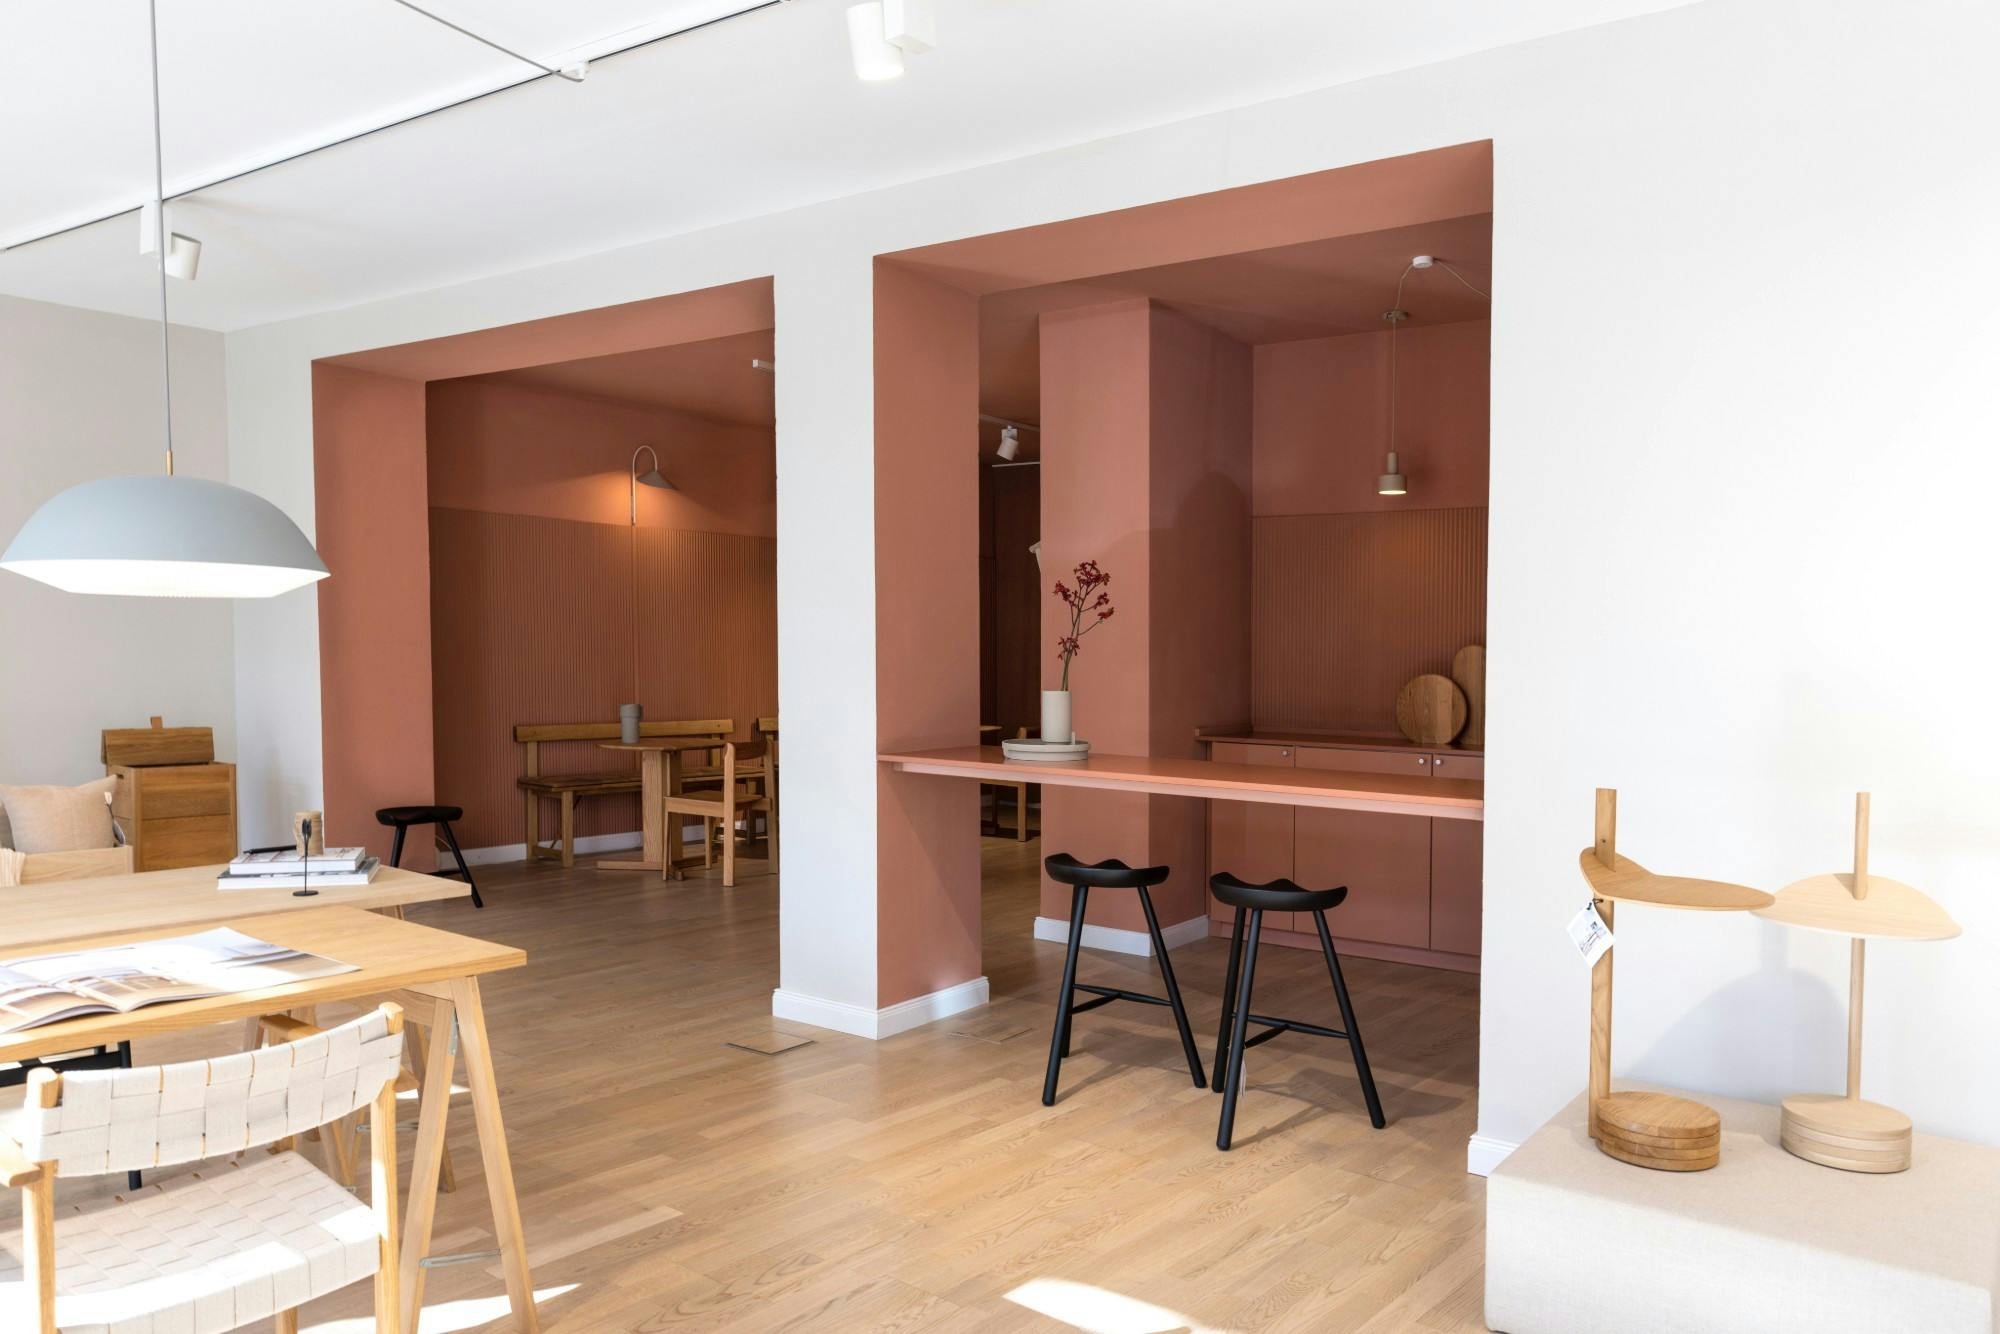 Numéro d'image 52 de la section actuelle de Le centre de design d’intérieur innovant Nidum choisit Cosentino pour ses finitions élégantes et chaleureuses de Cosentino France